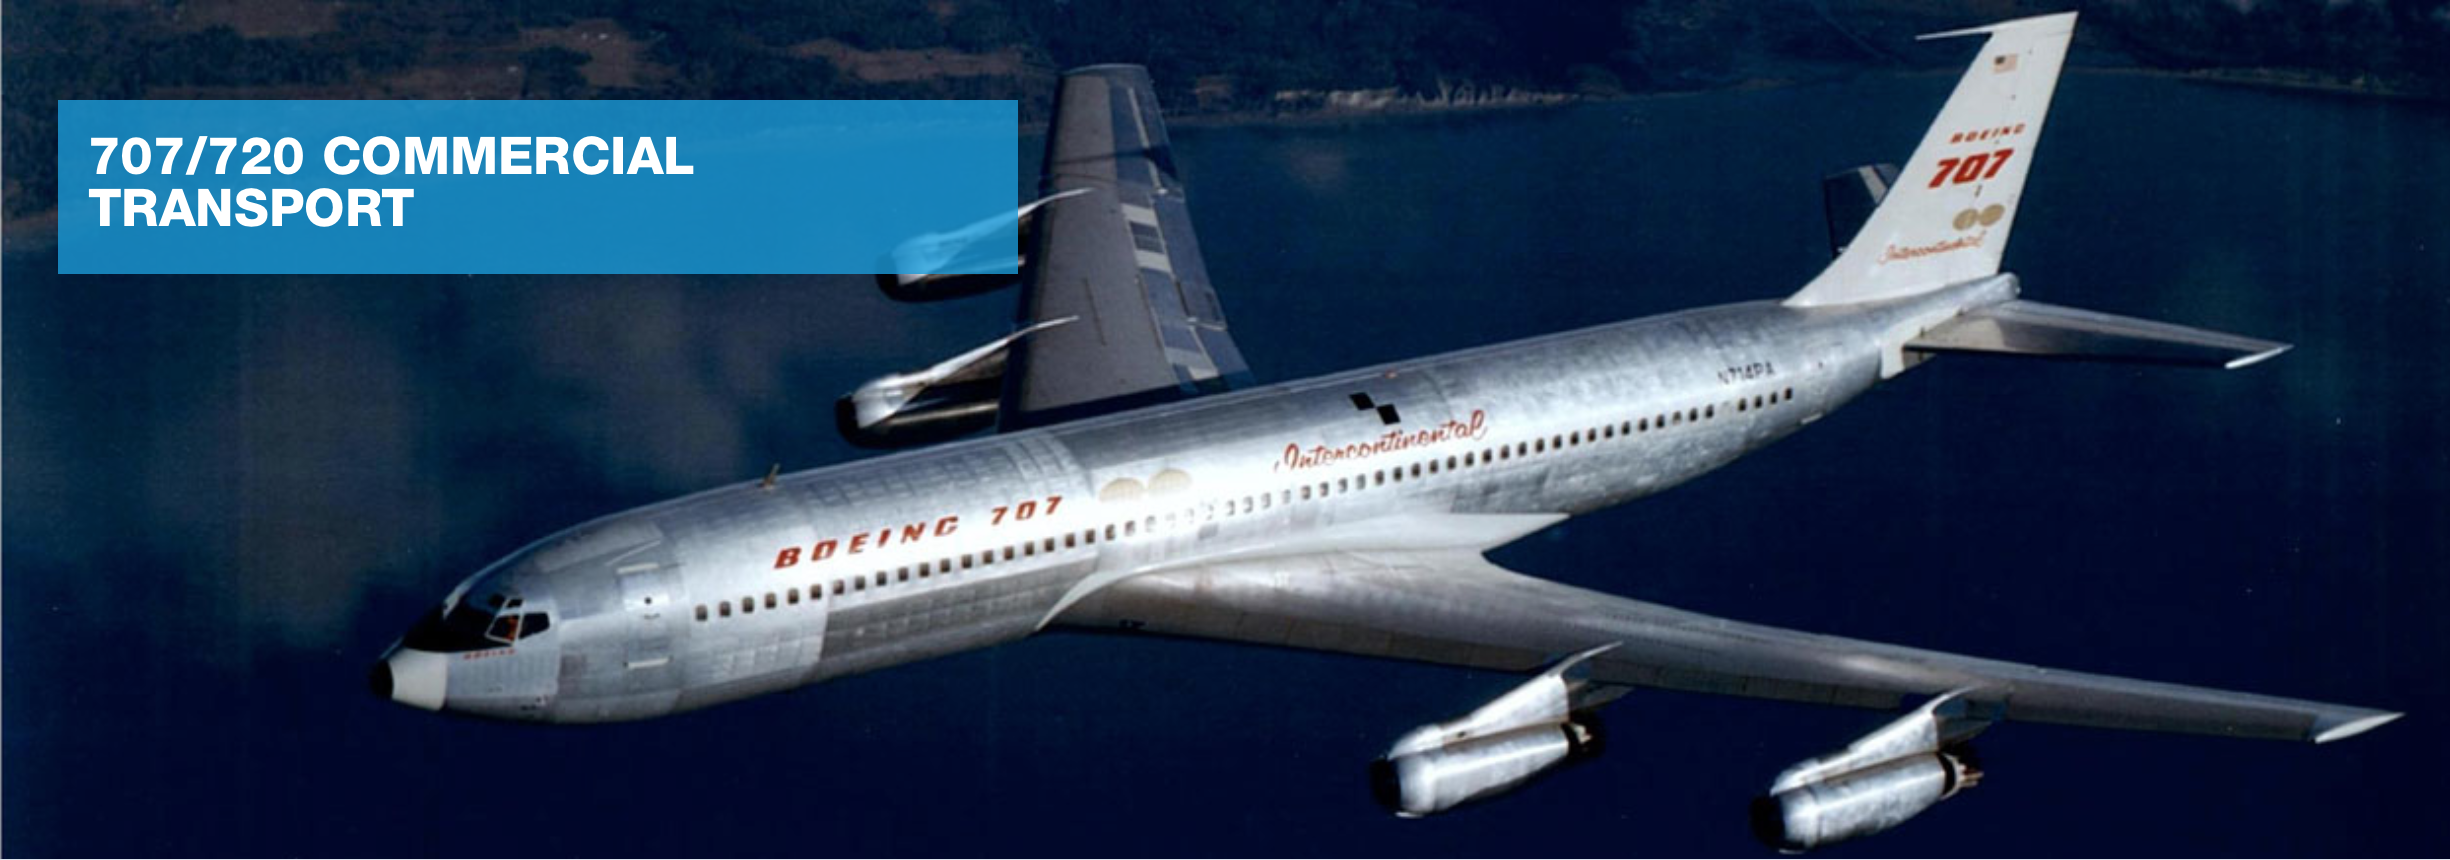 Boeing 707 Intercontinental airplane